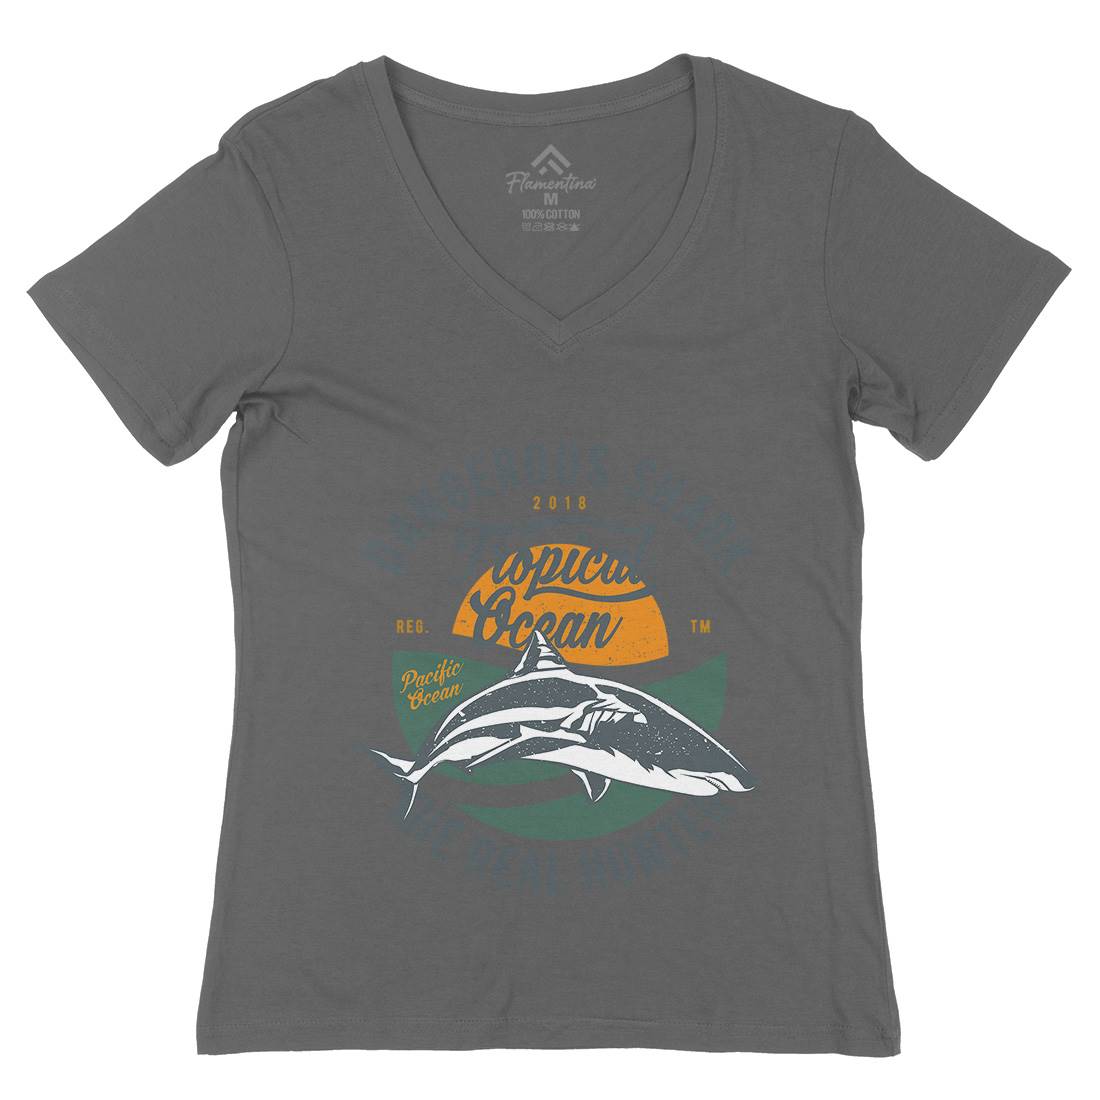 Dangerous Shark Womens Organic V-Neck T-Shirt Navy A643